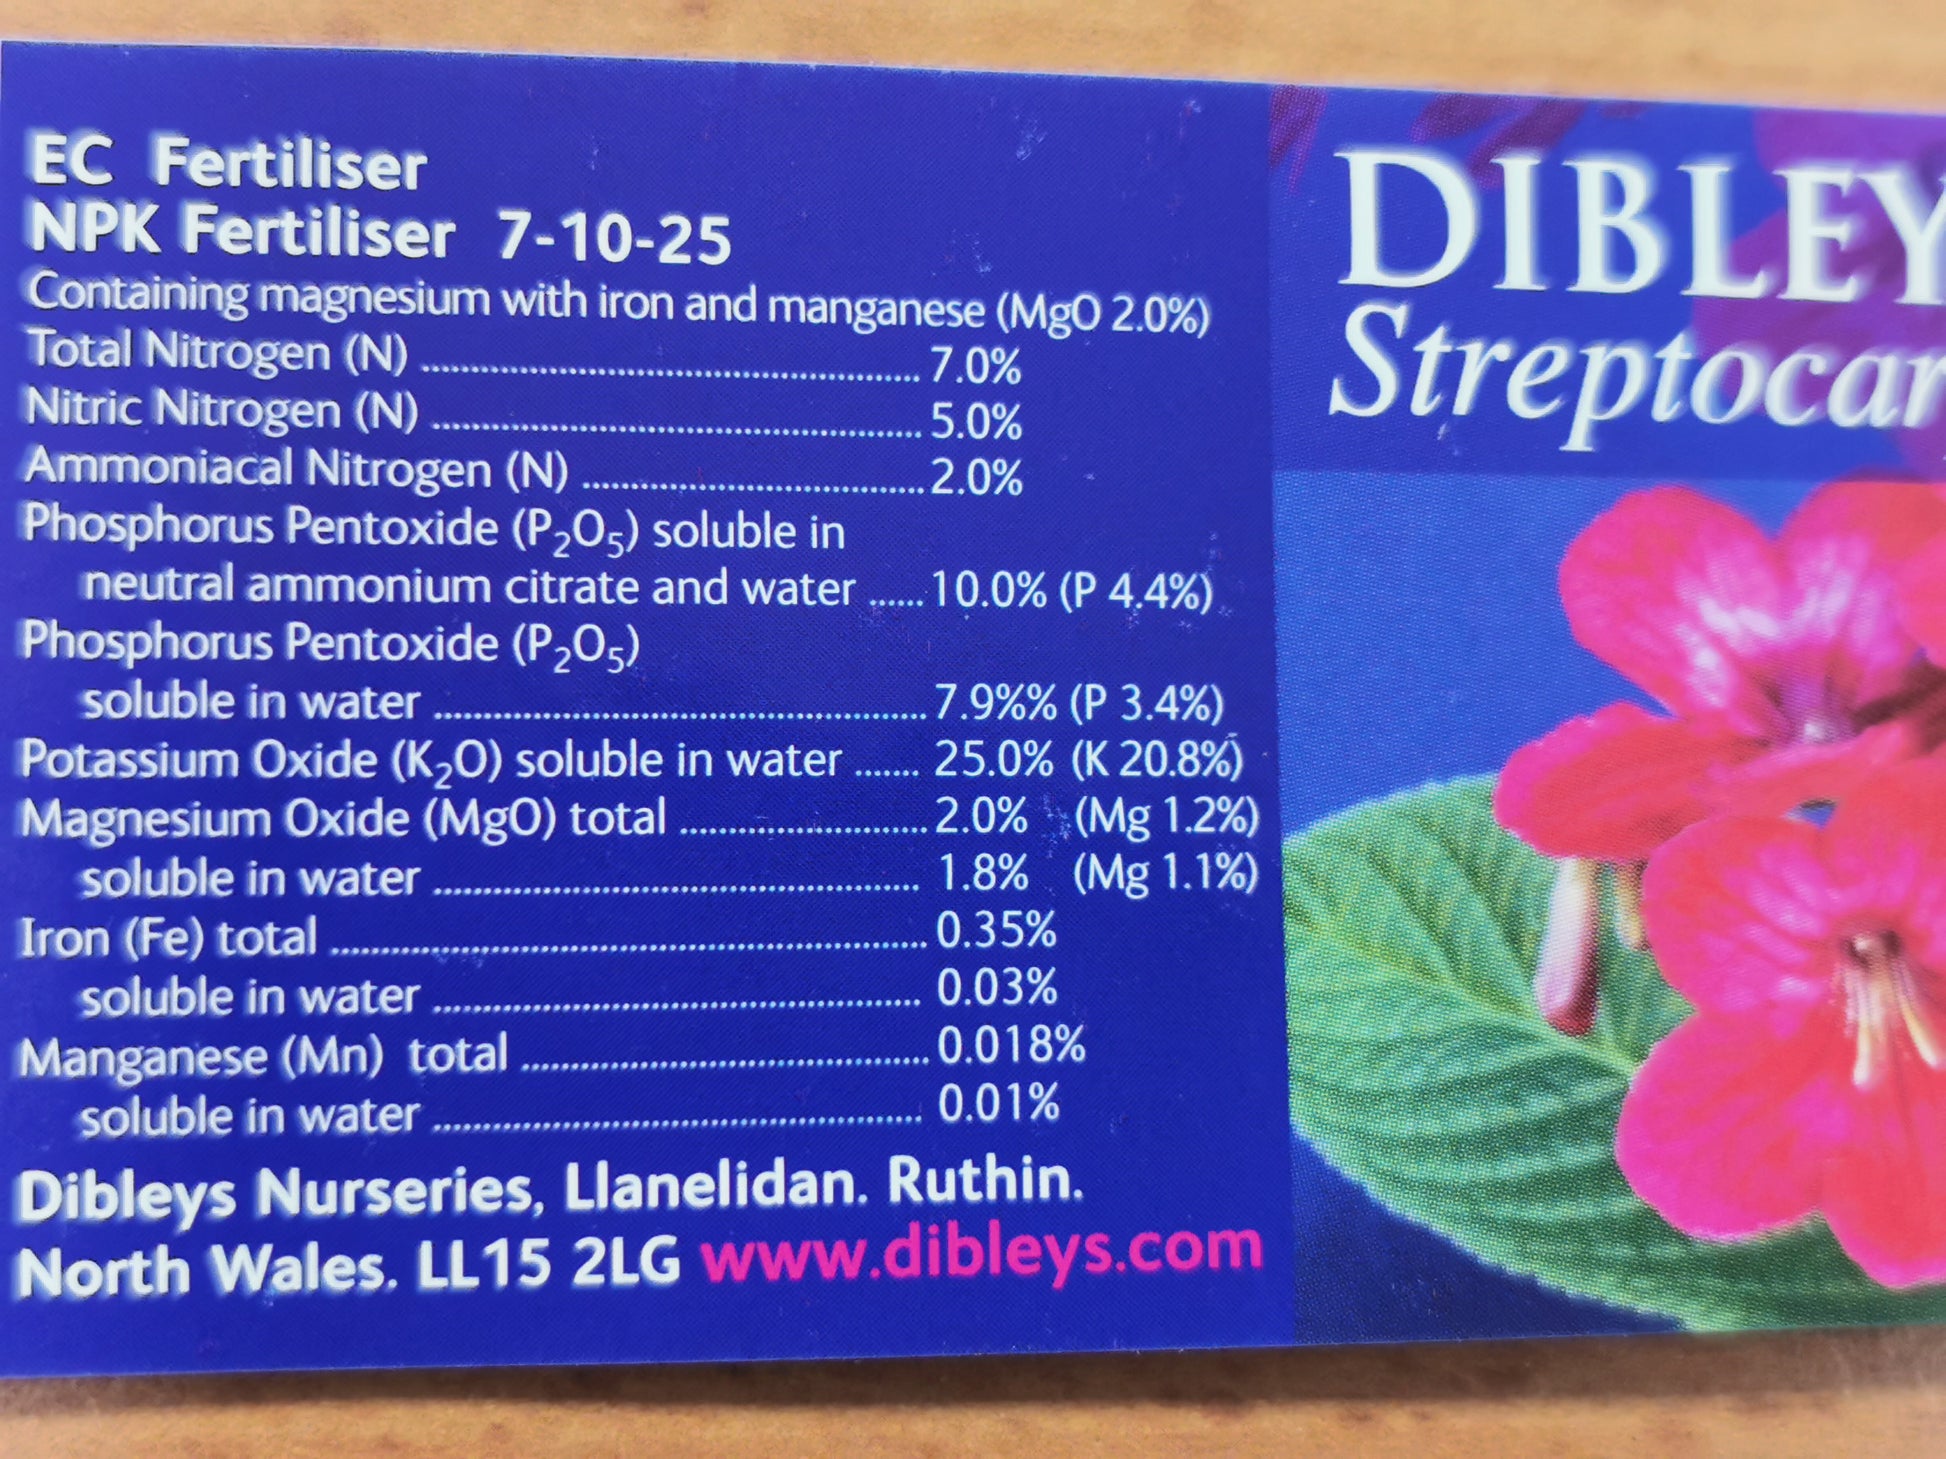 Dibleys Streptocarpus Food Tablets - Dibleys